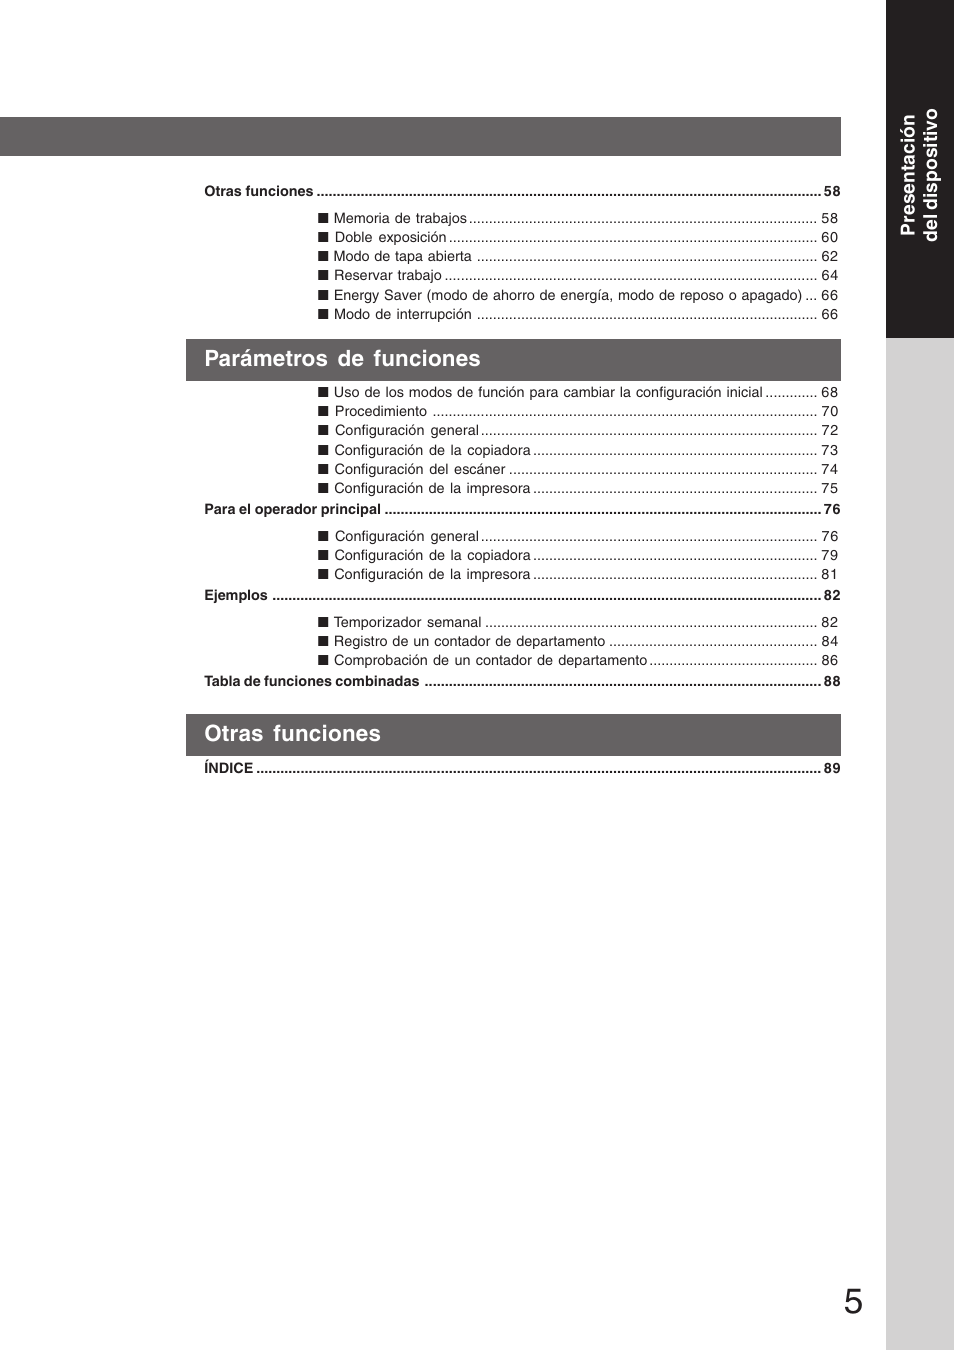 Parámetros de funciones, Otras funciones | Panasonic DP8035 Manual del usuario | Página 5 / 92